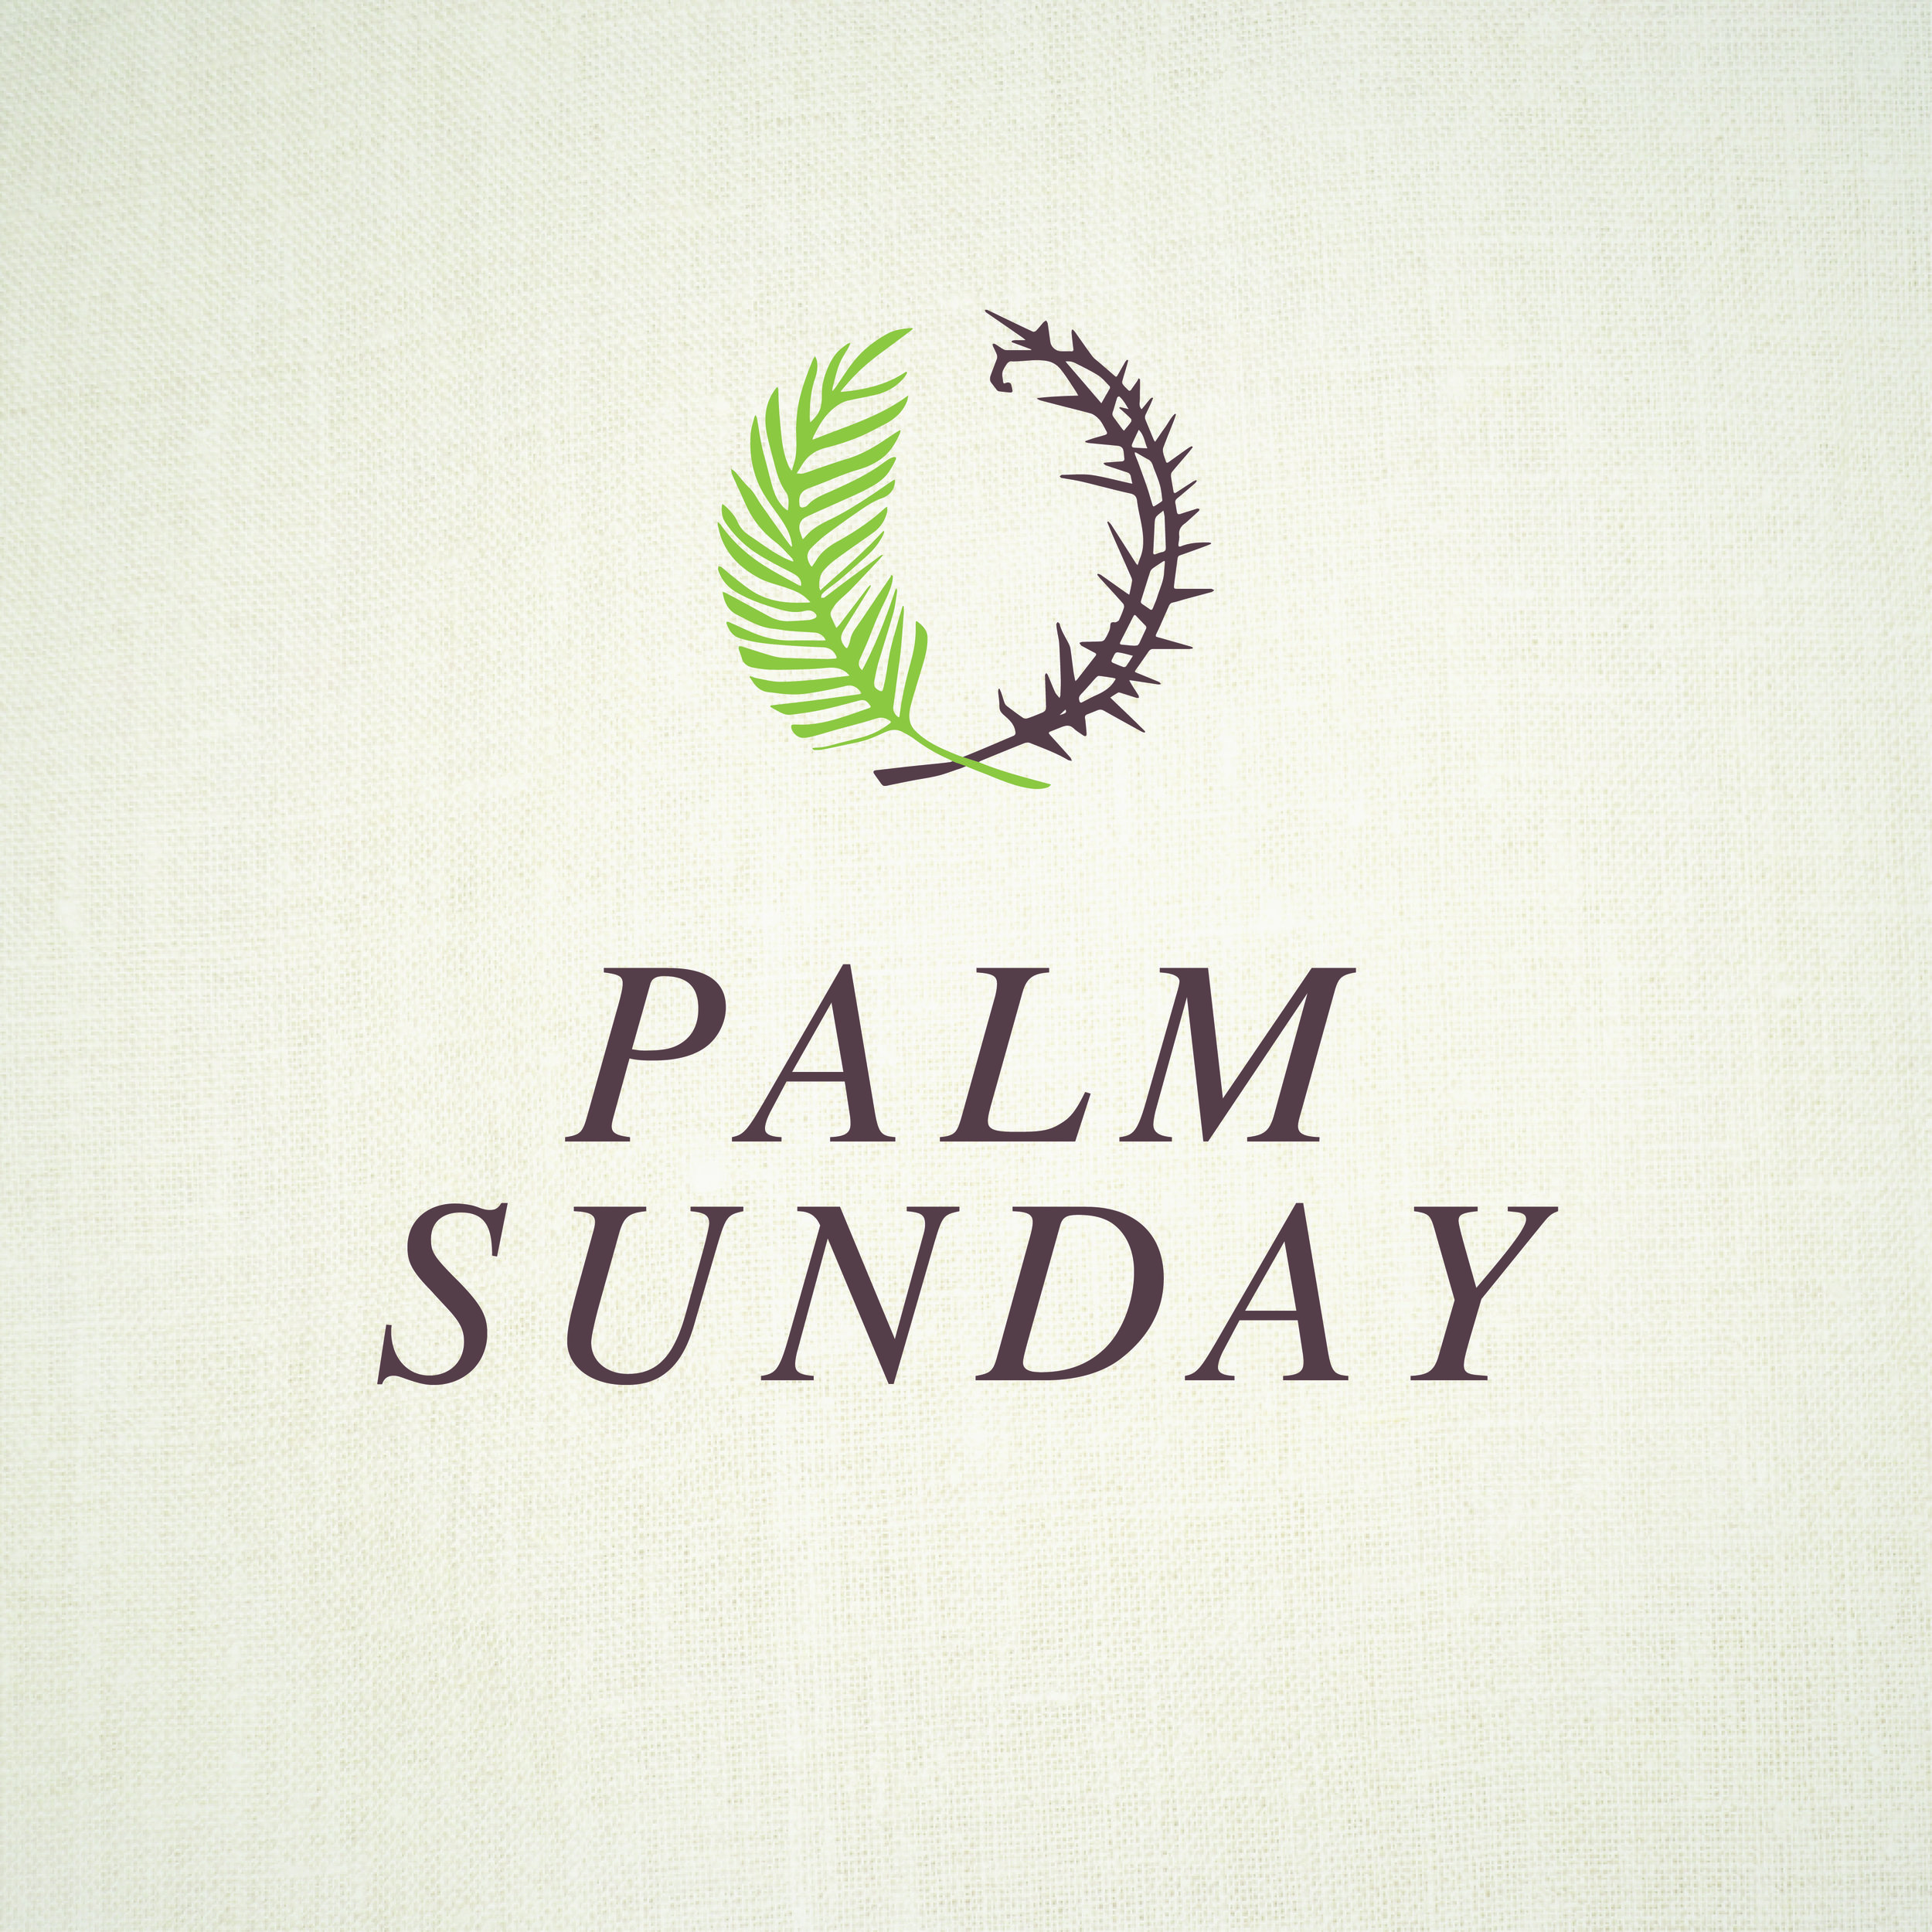 Palm Sunday | April 9, 2017